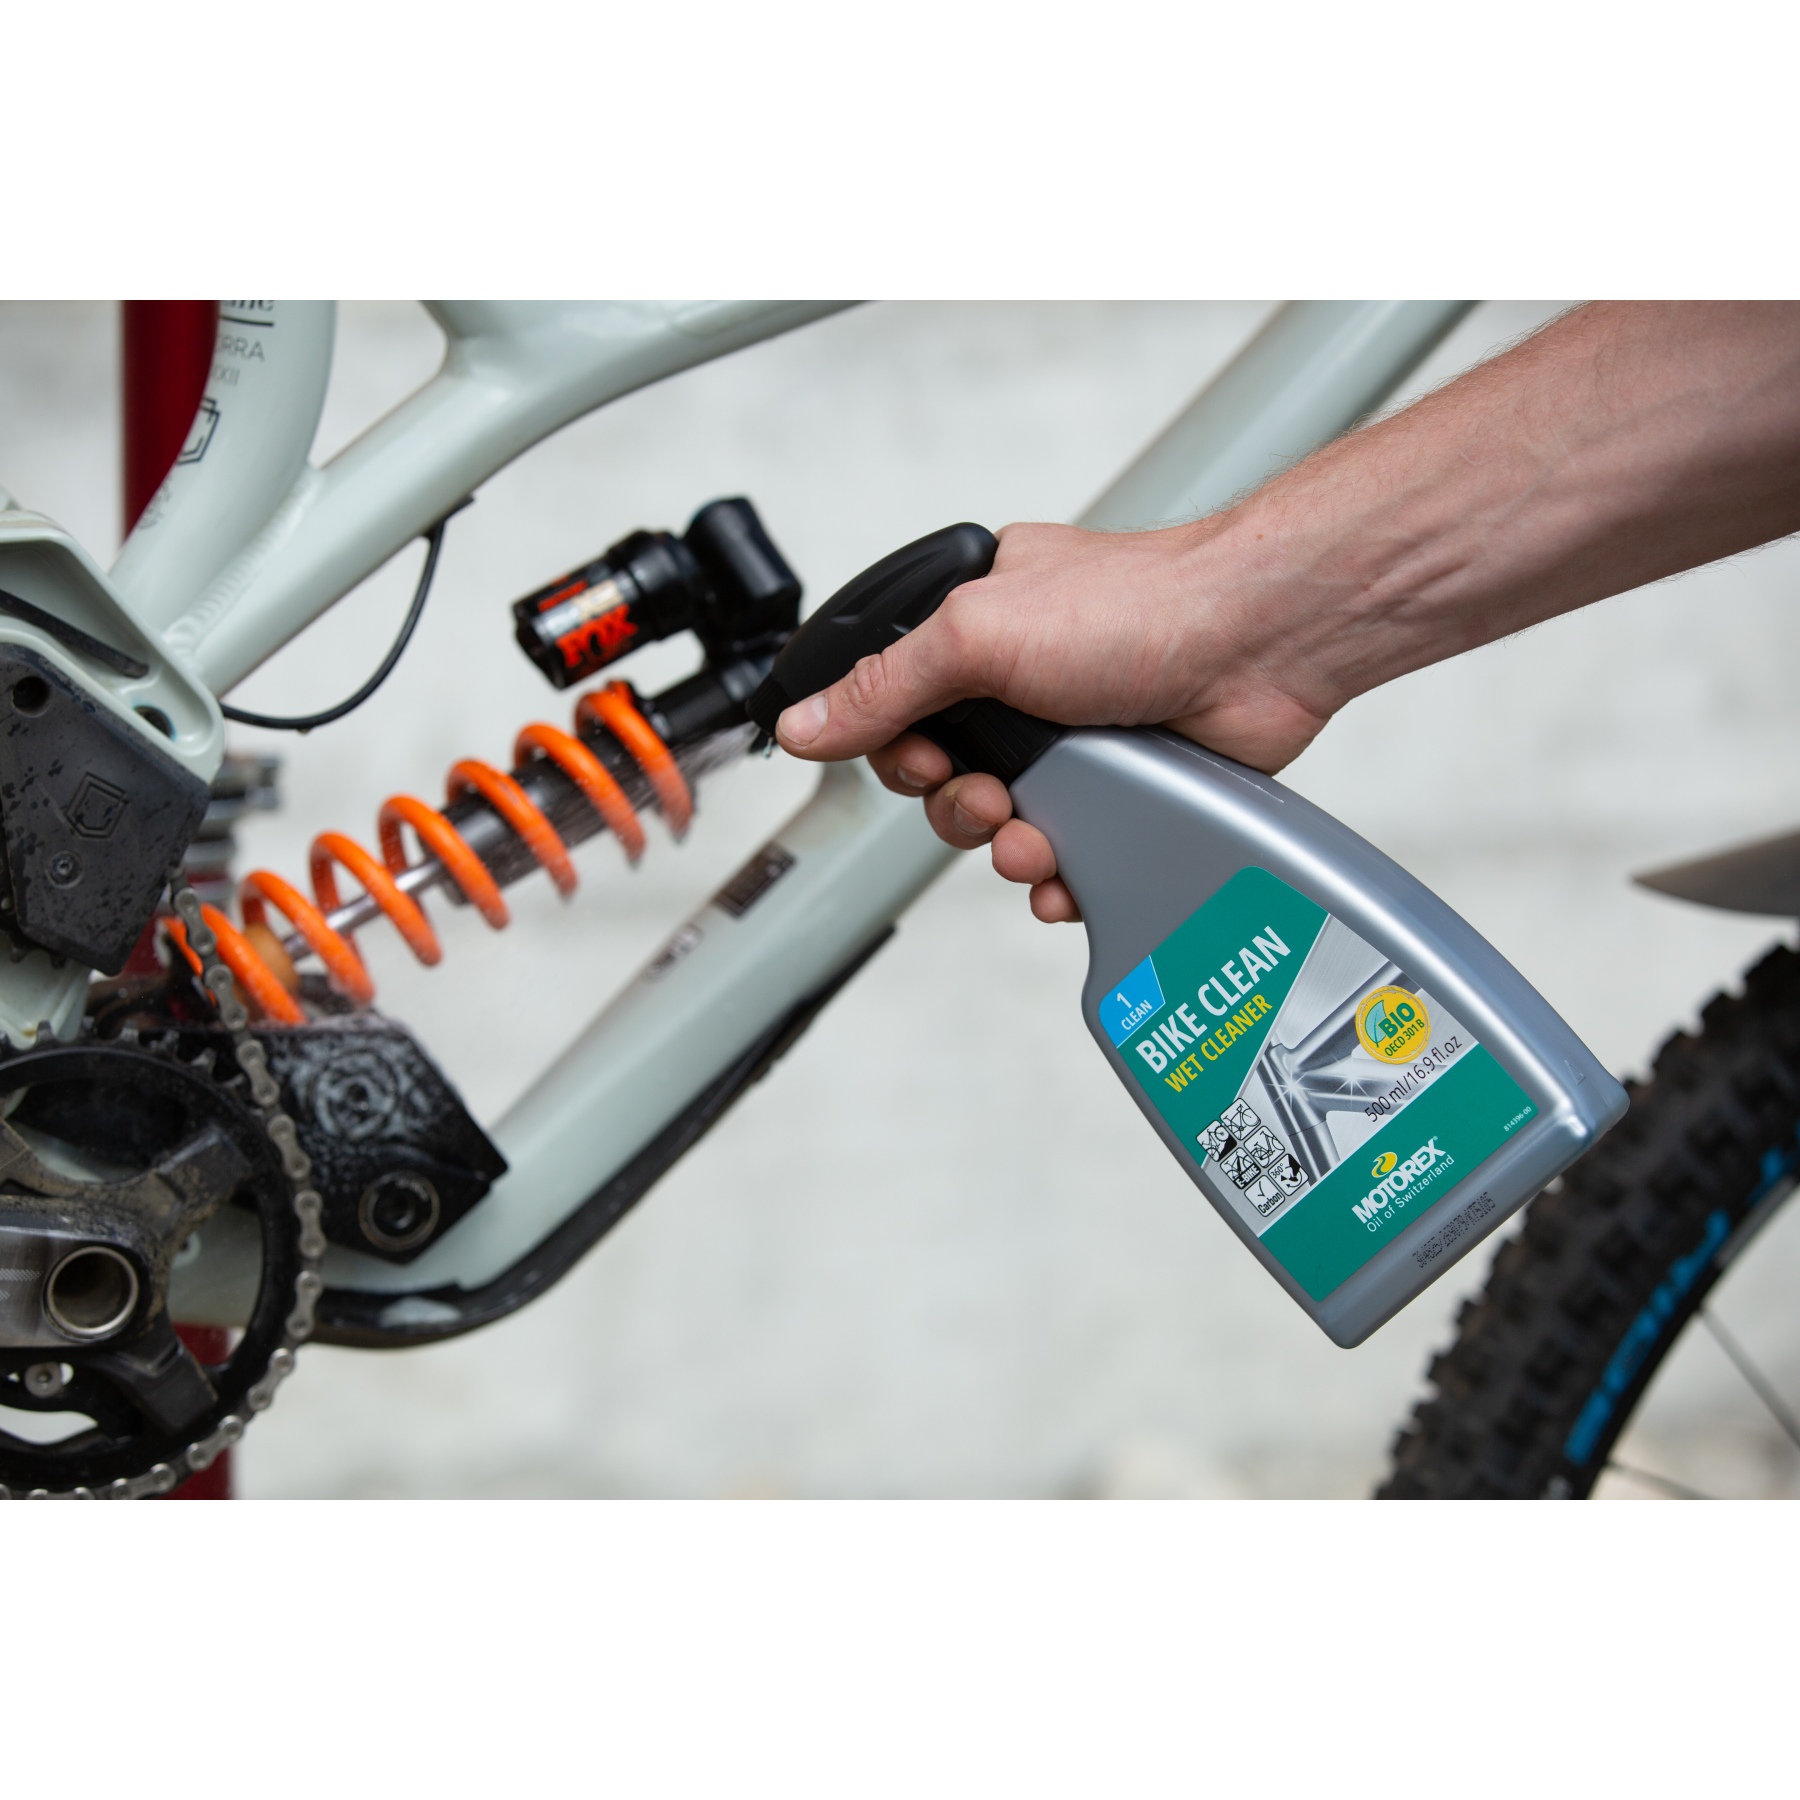 Motorex Power Brake Clean, Parts & Accessories